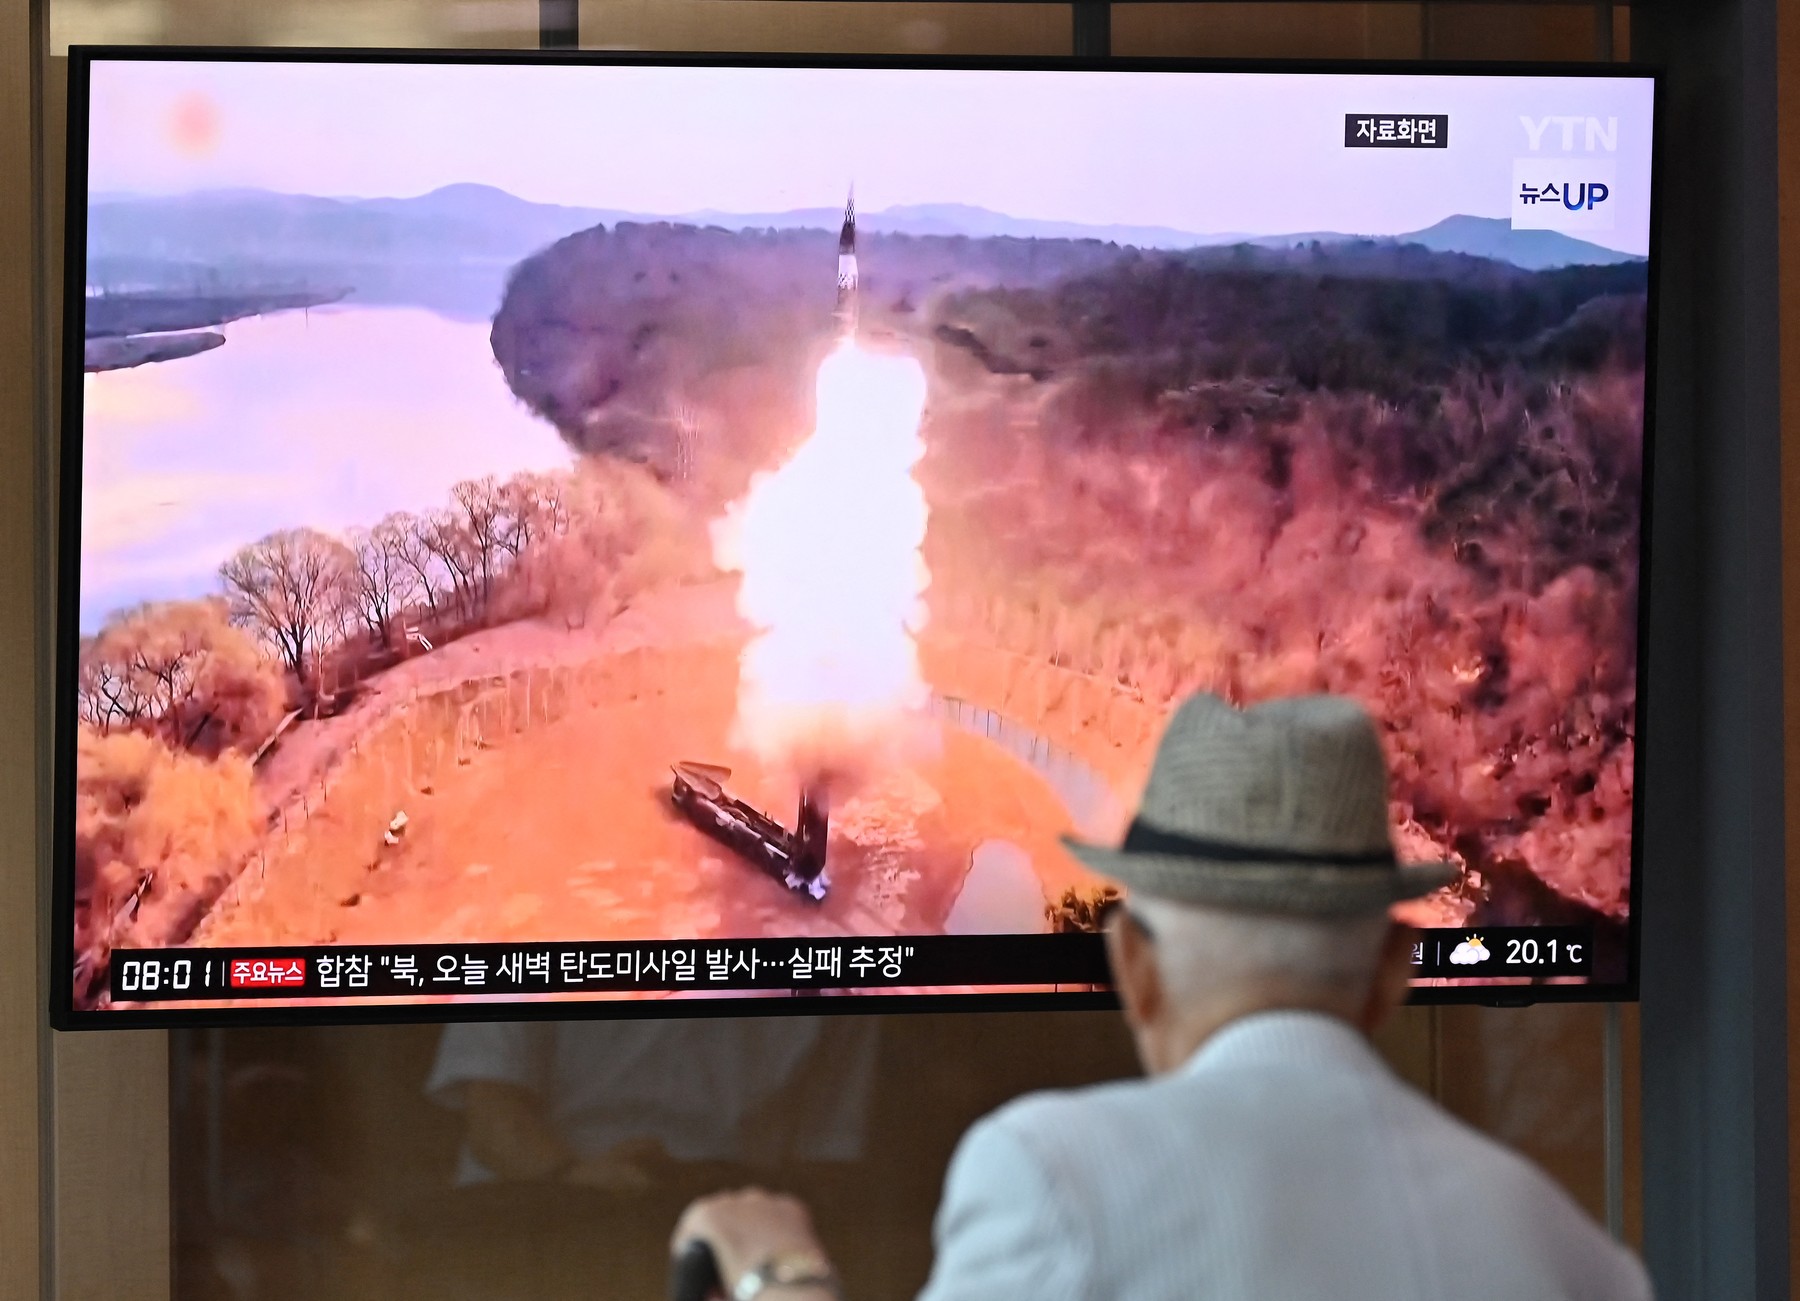 Sjevernokorejska balistička raketa